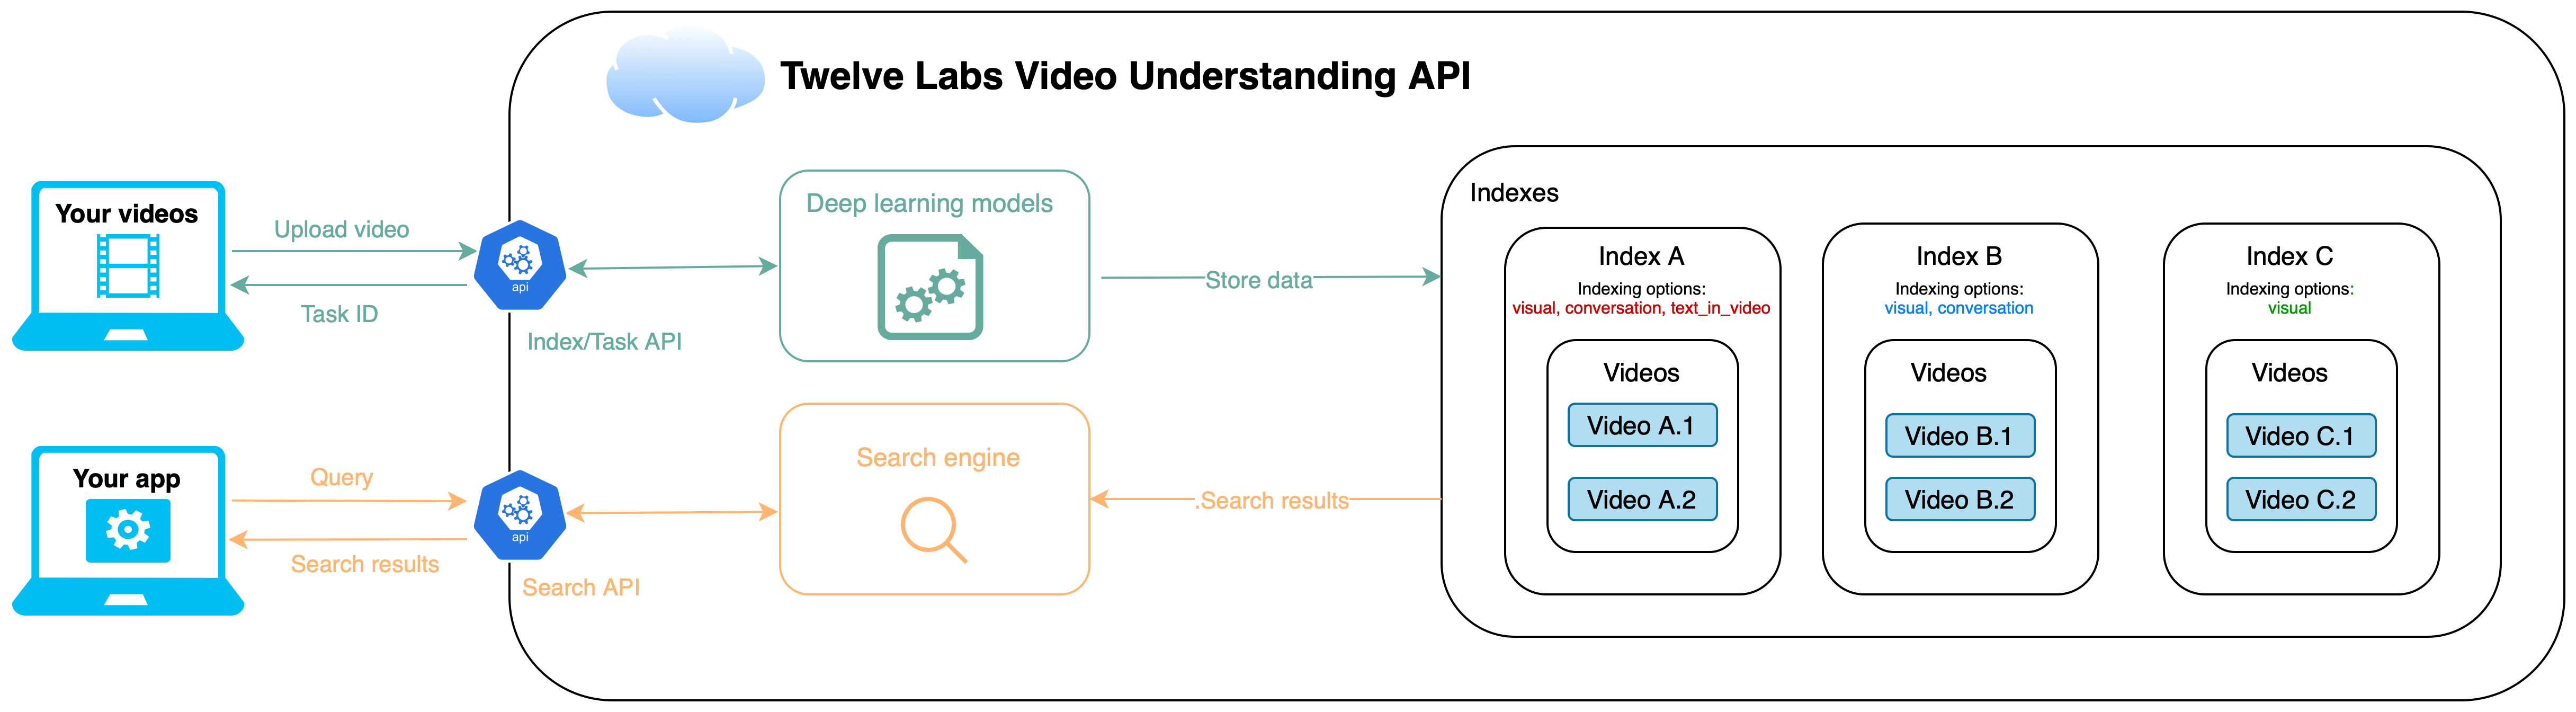 Architecture Overview of Twelve Labs Video Understanding API